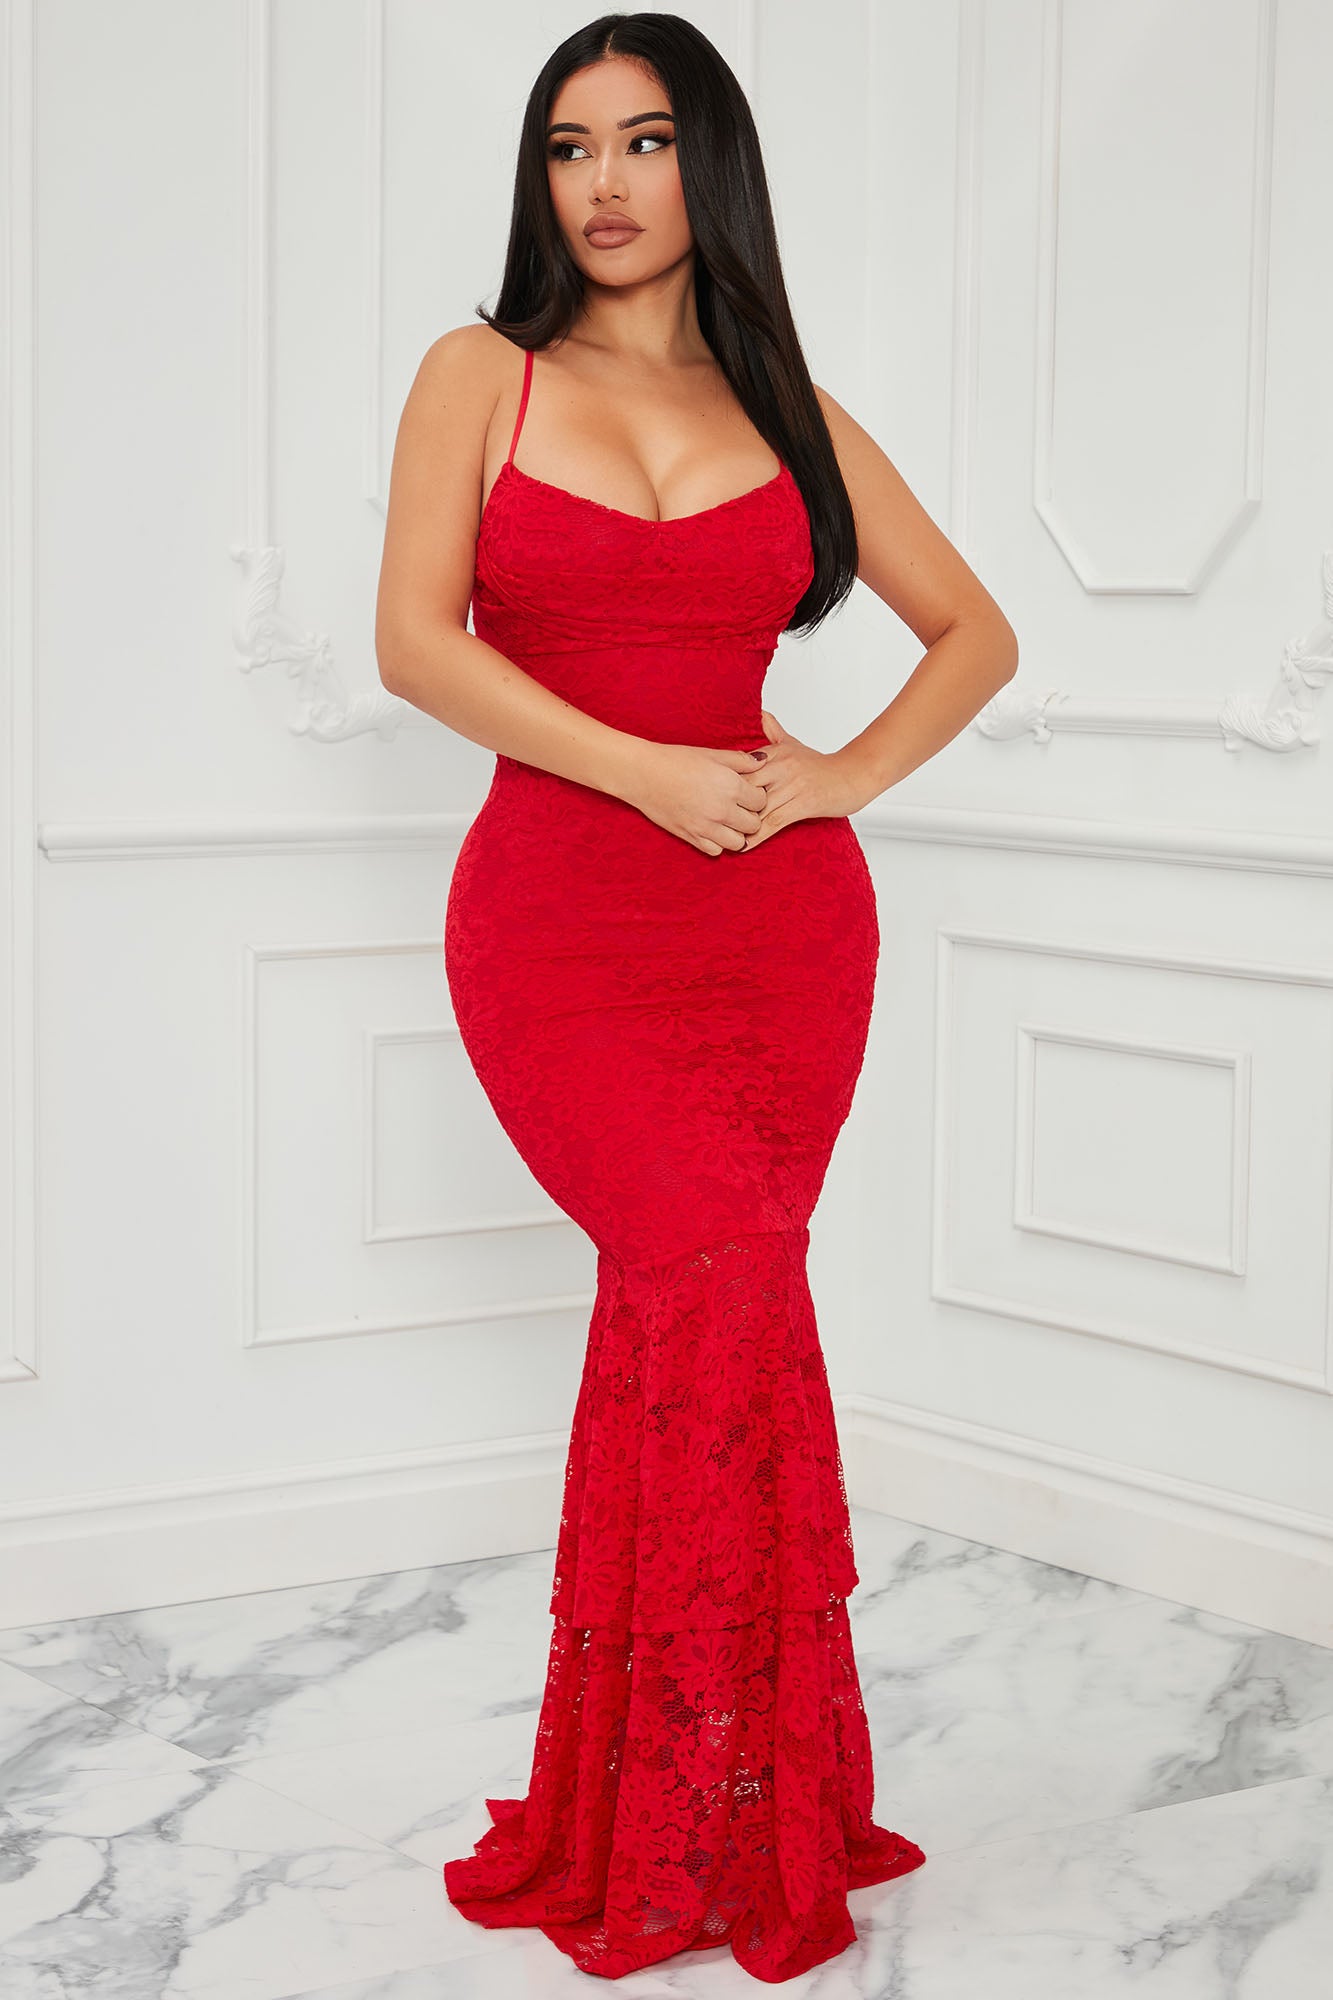 Elegant Lace Maxi Dress - Red, Fashion Nova, Dresses